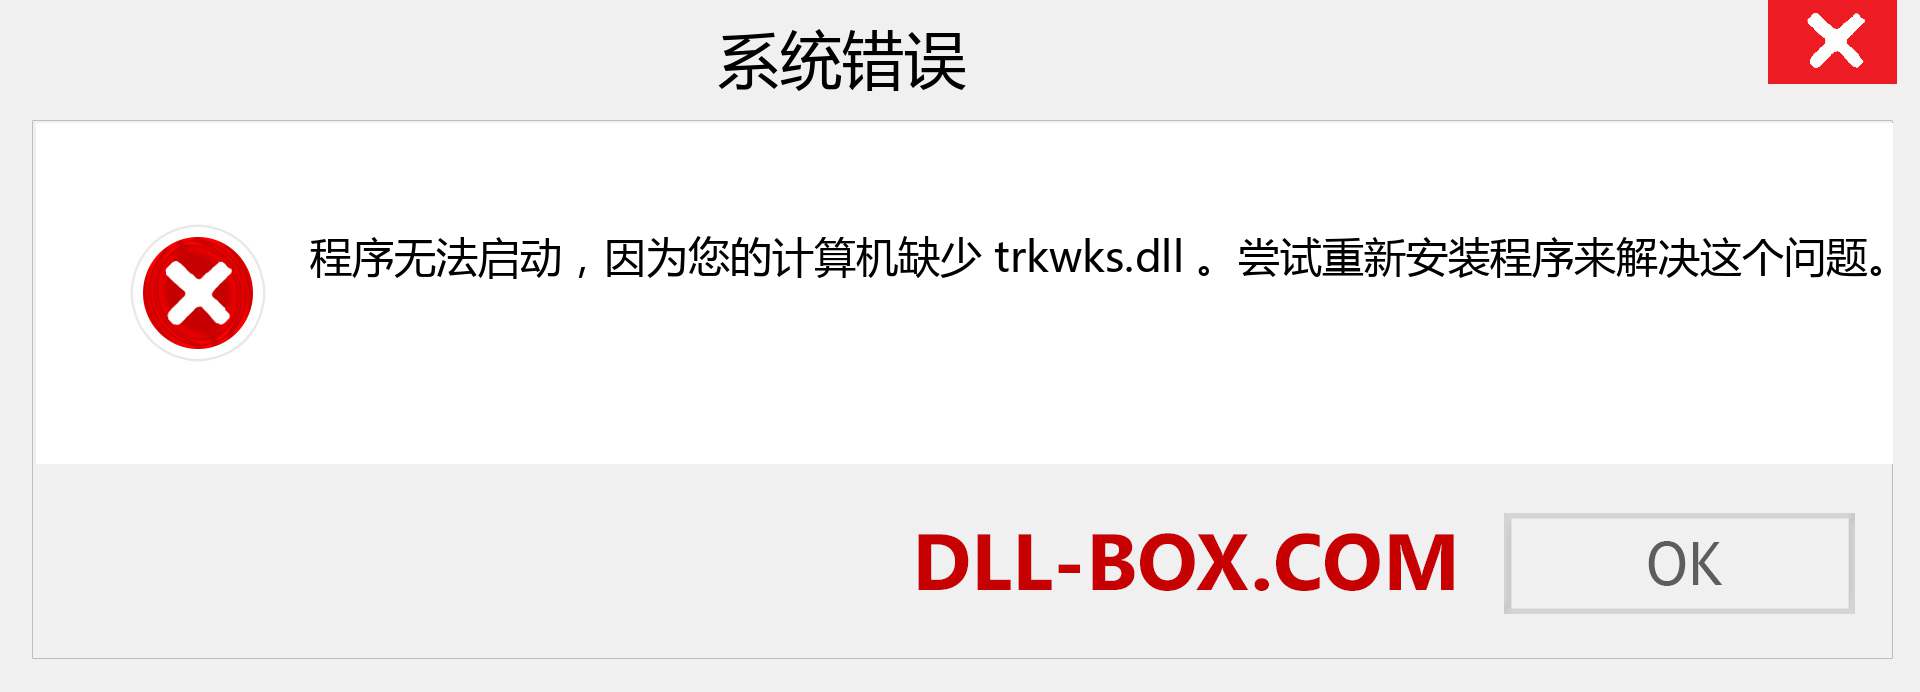 trkwks.dll 文件丢失？。 适用于 Windows 7、8、10 的下载 - 修复 Windows、照片、图像上的 trkwks dll 丢失错误